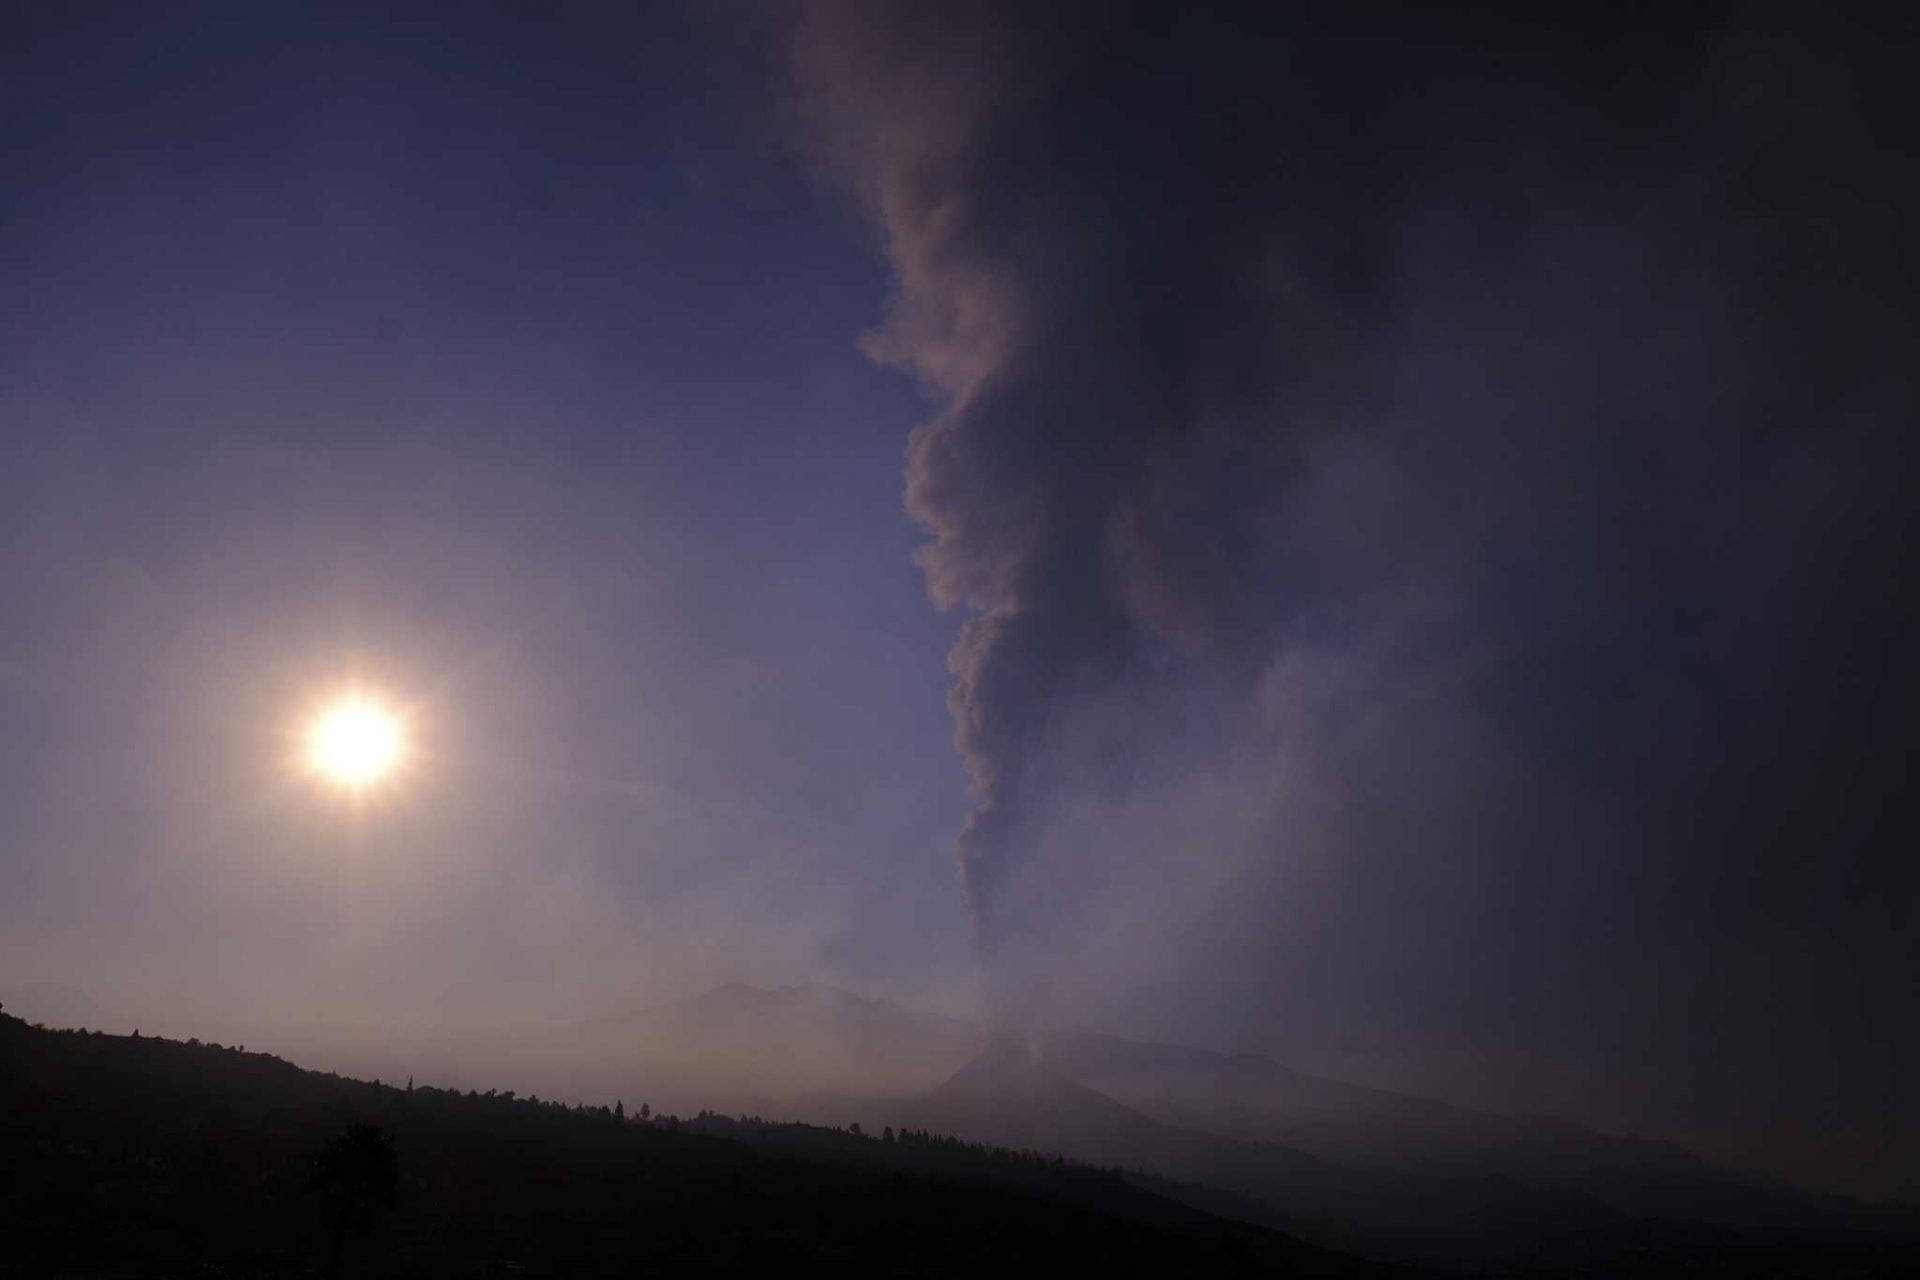 Spanish volcano eruption shuts airport, house restful ‘irritating’